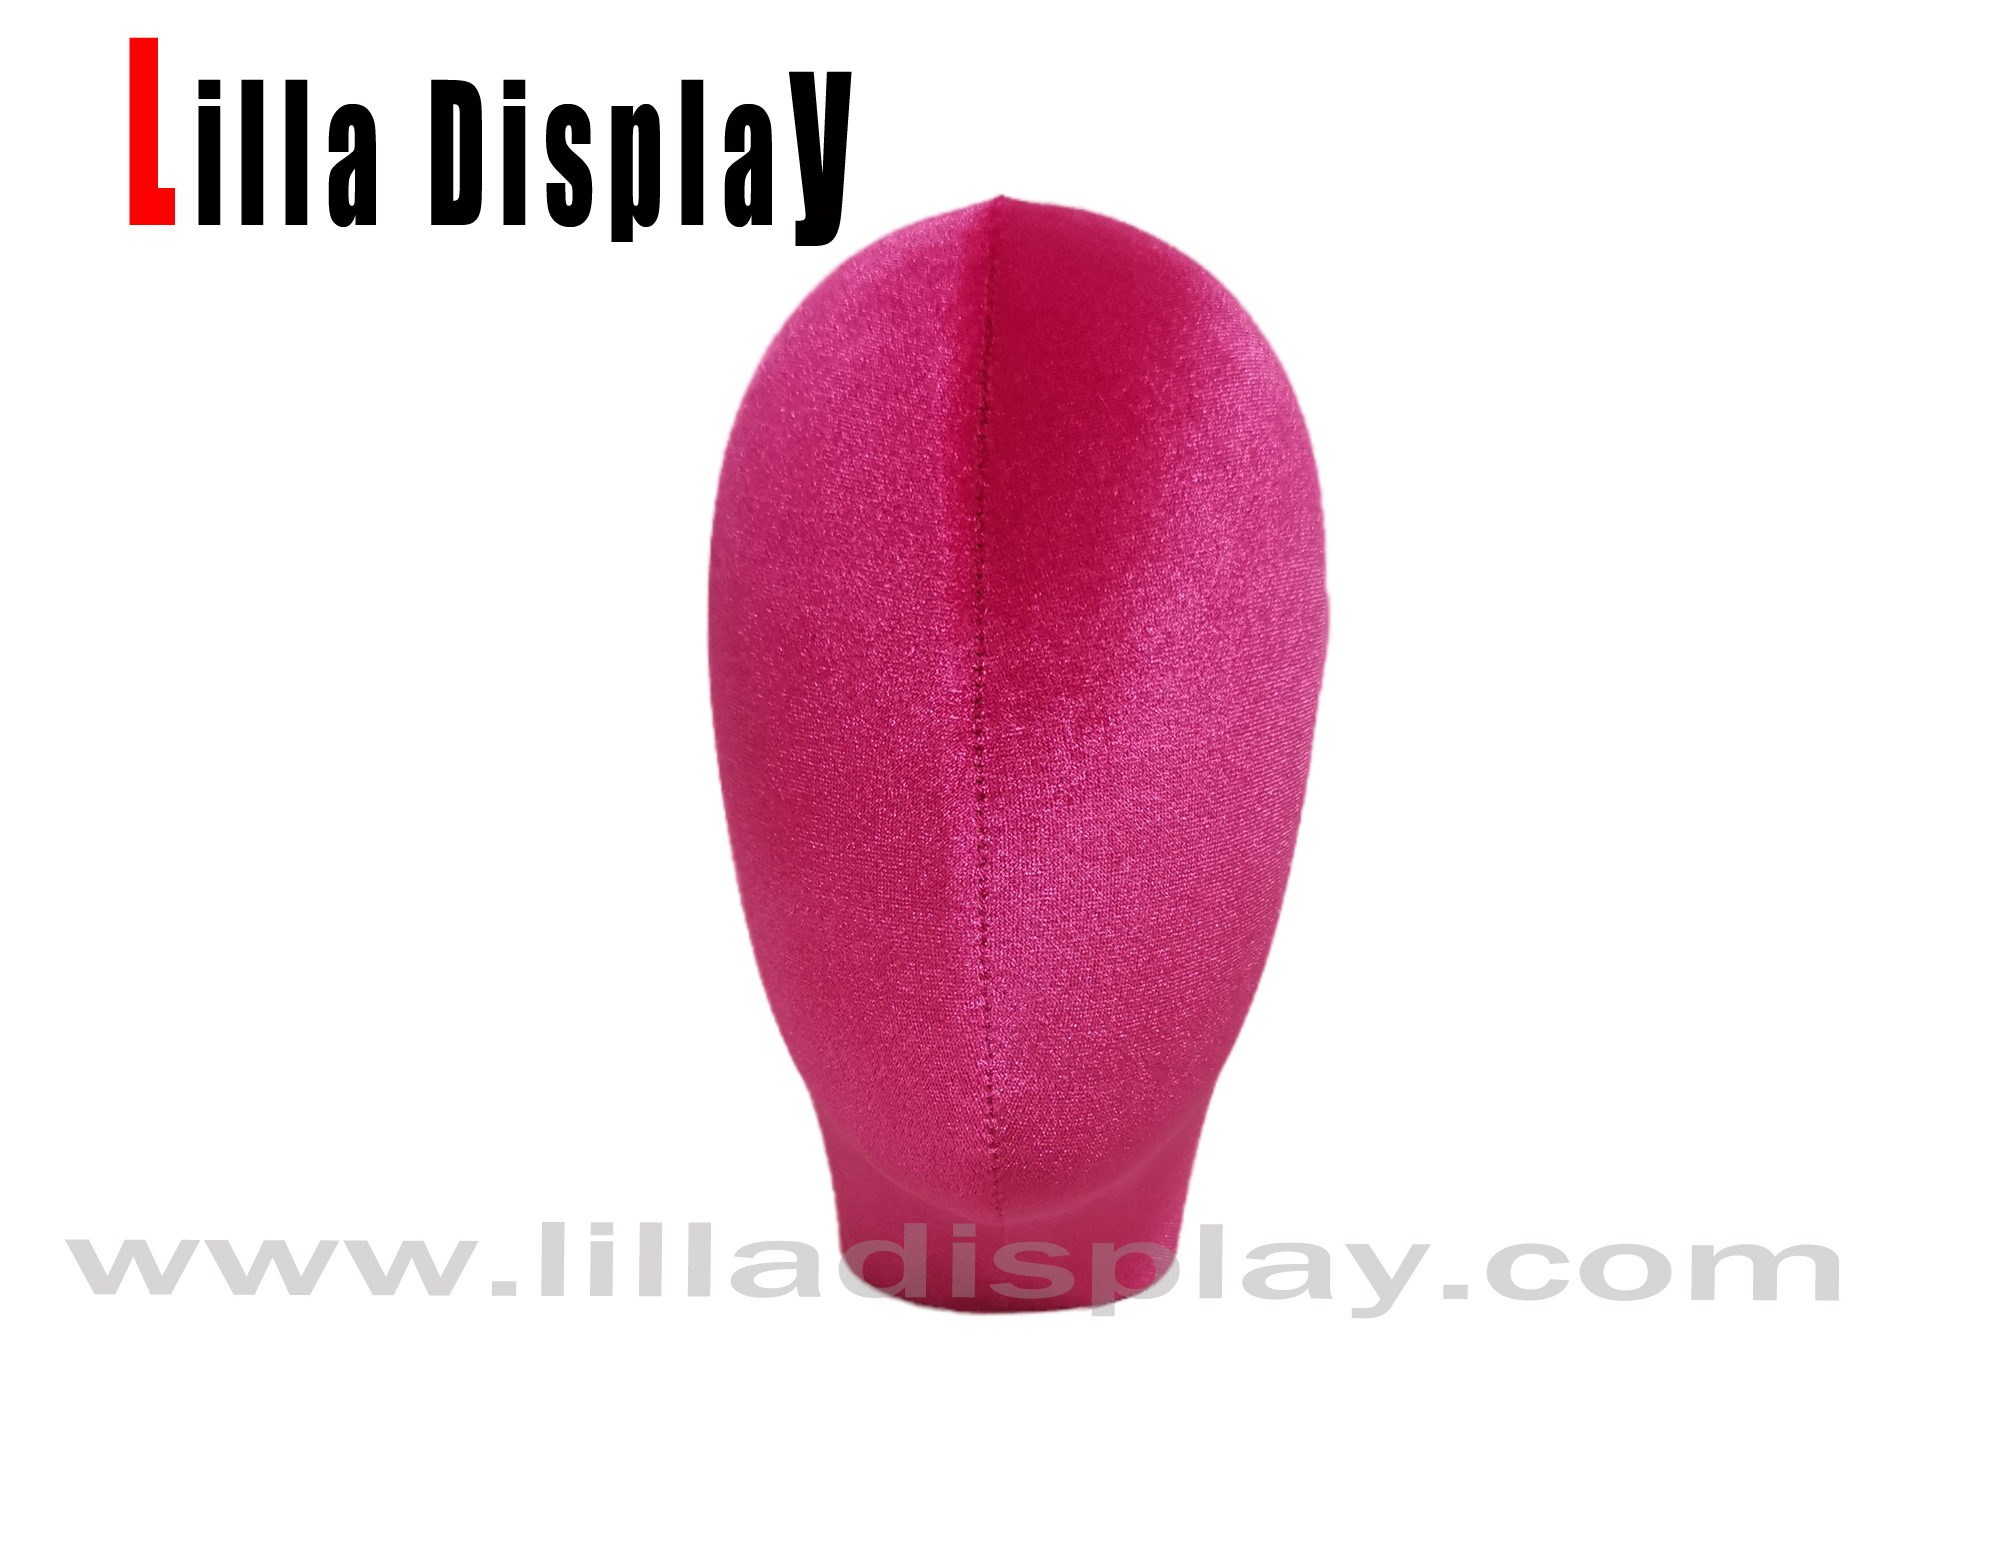 hete roze lilladisplay 38 usd vrouwelijke mannequin hoofd lucy voor tulband display